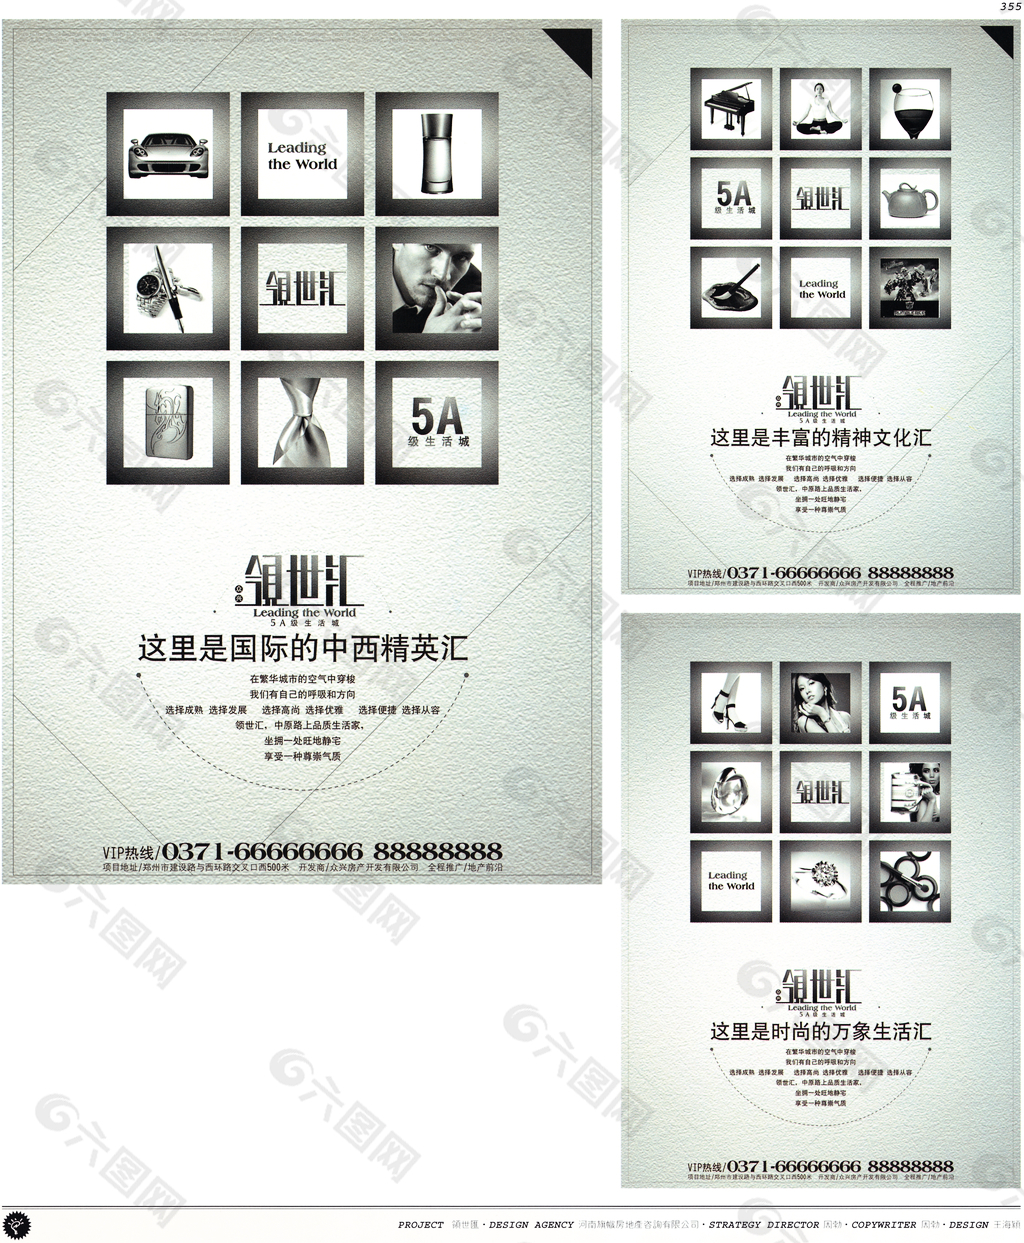 中国房地产广告年鉴 第二册 创意设计_0337